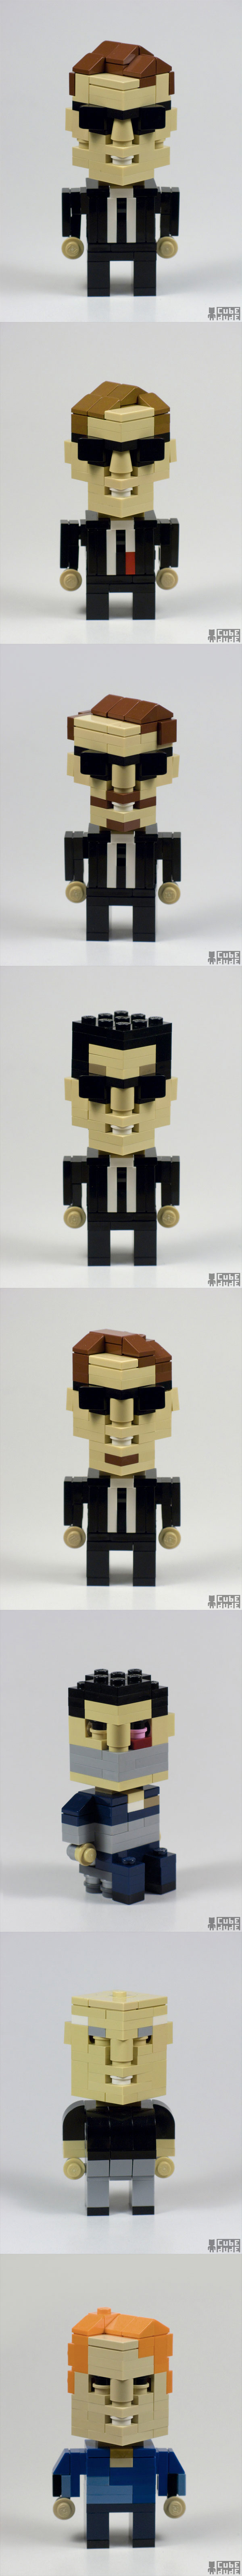 Personajes de Reservoir Dogs hechos con LEGO